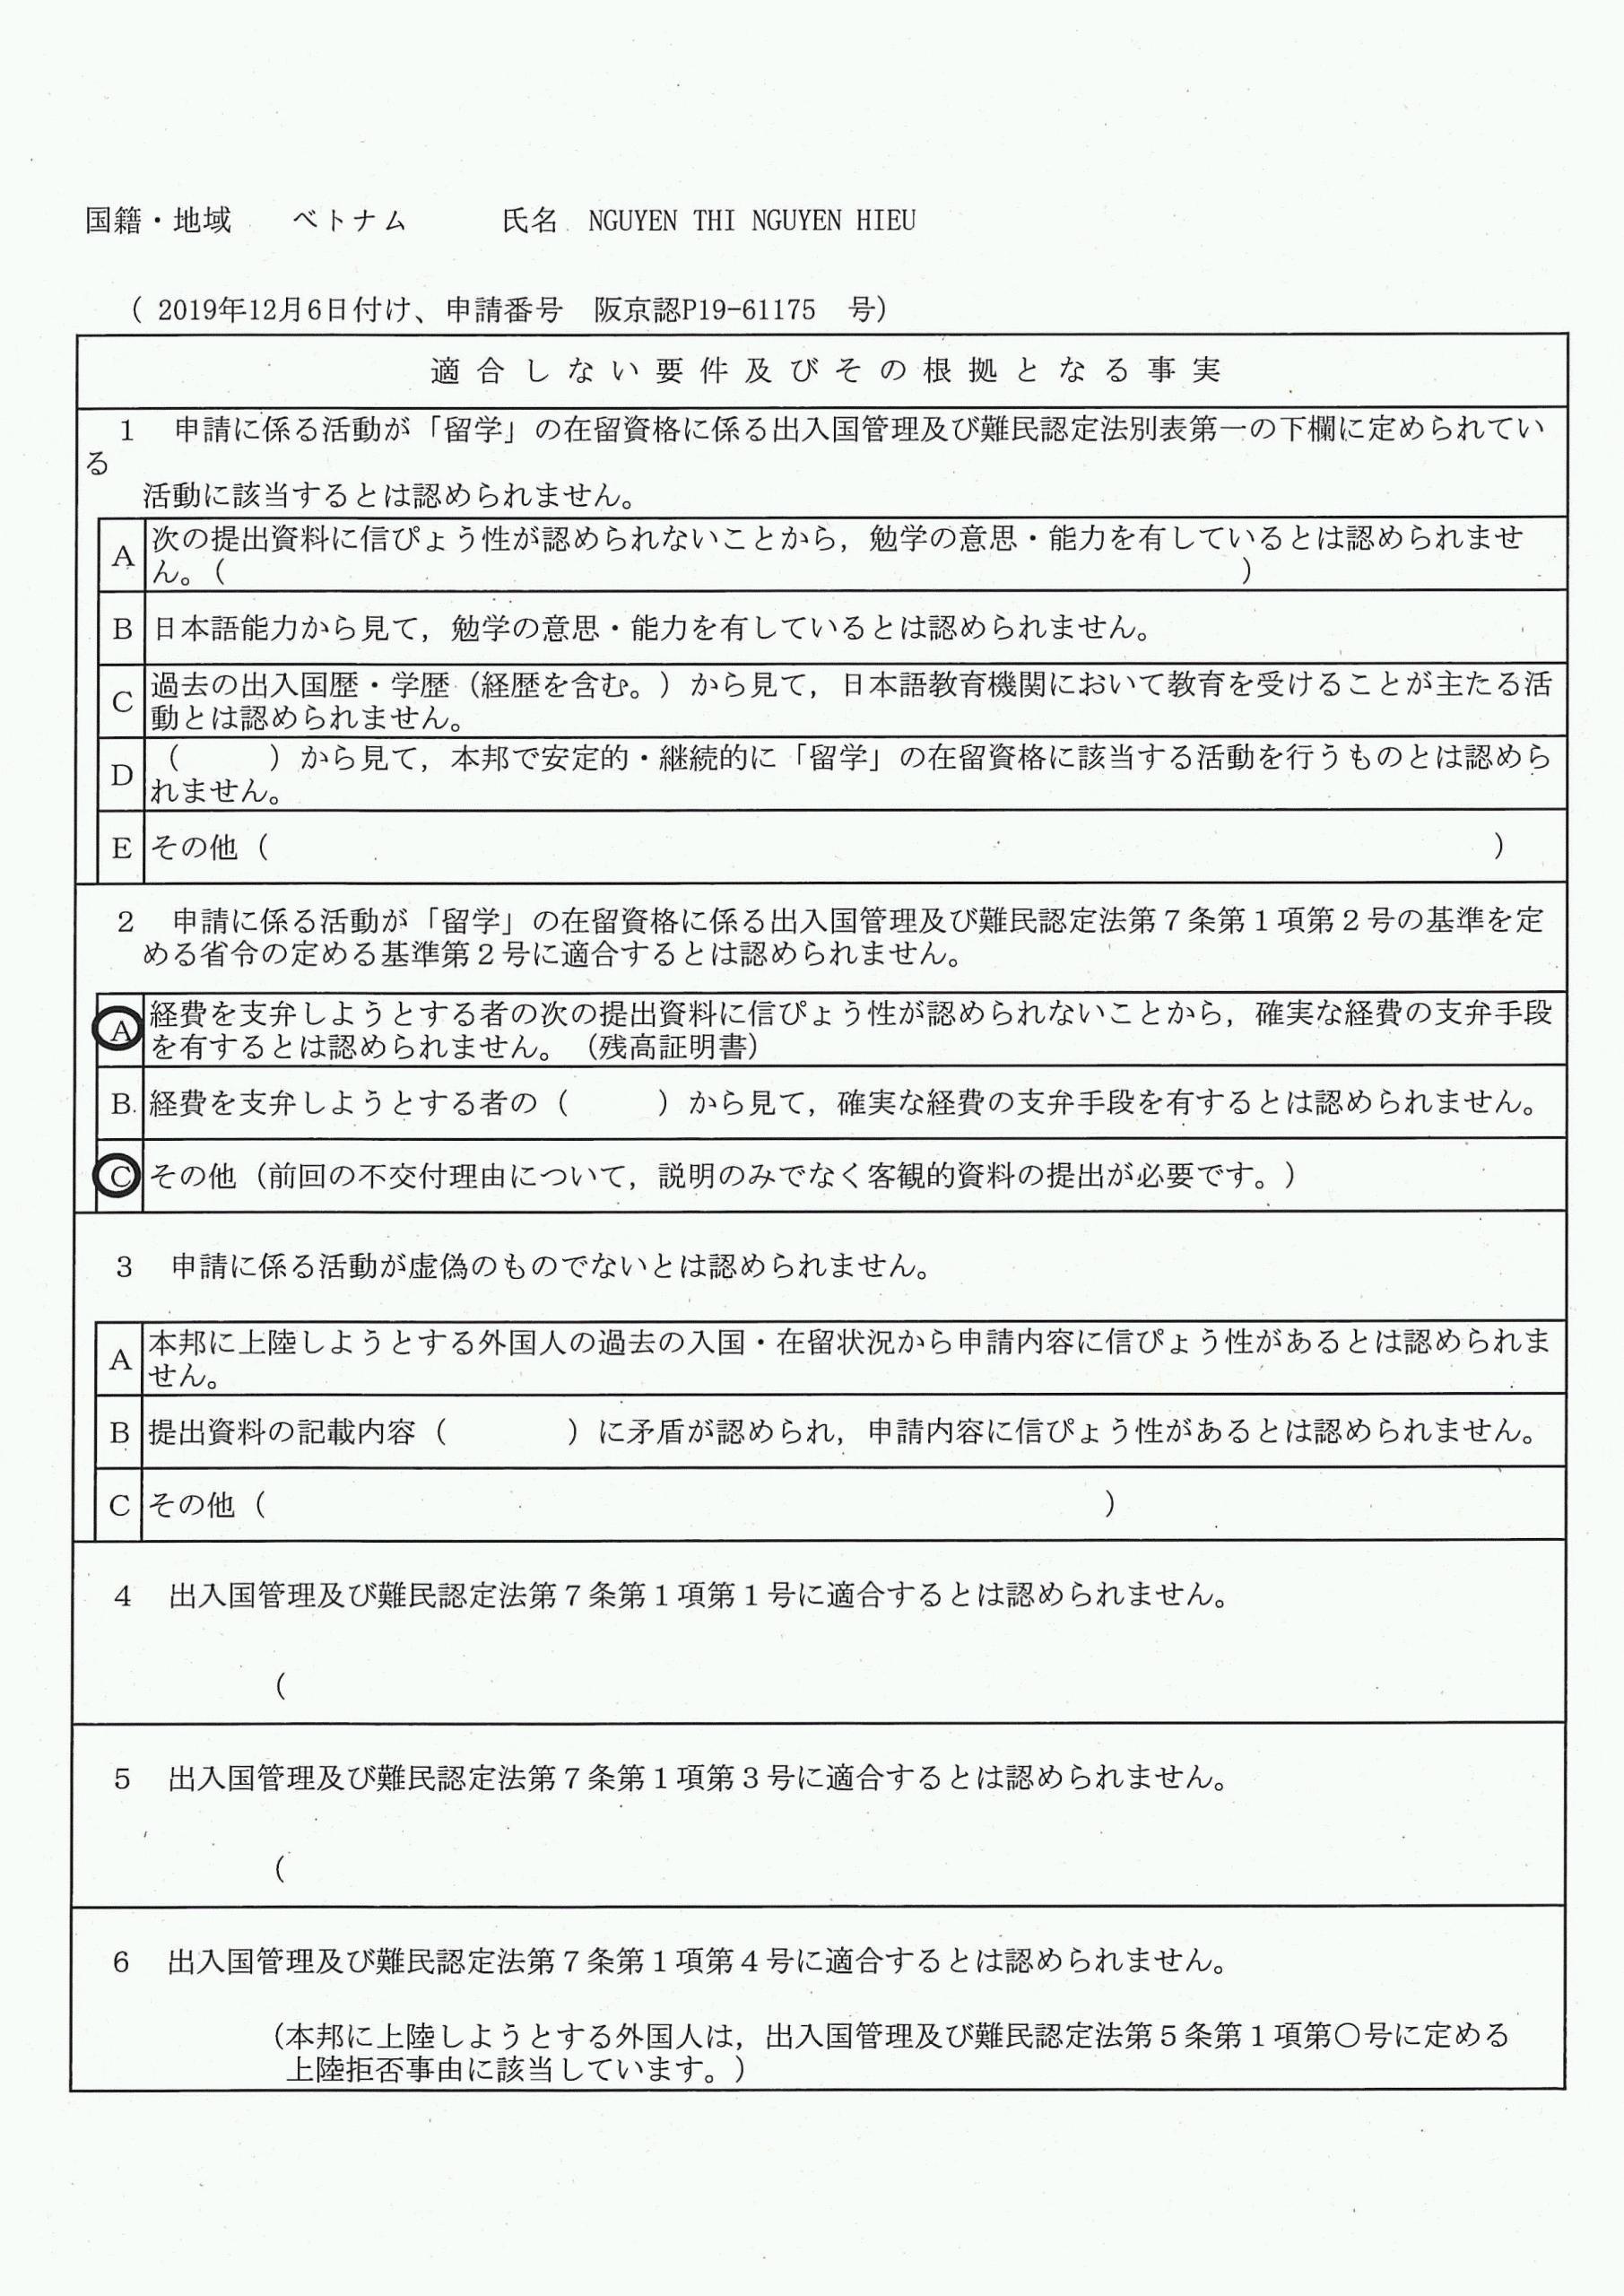 Bảng xác nhận lỗi trượt Cục XNC Osaka